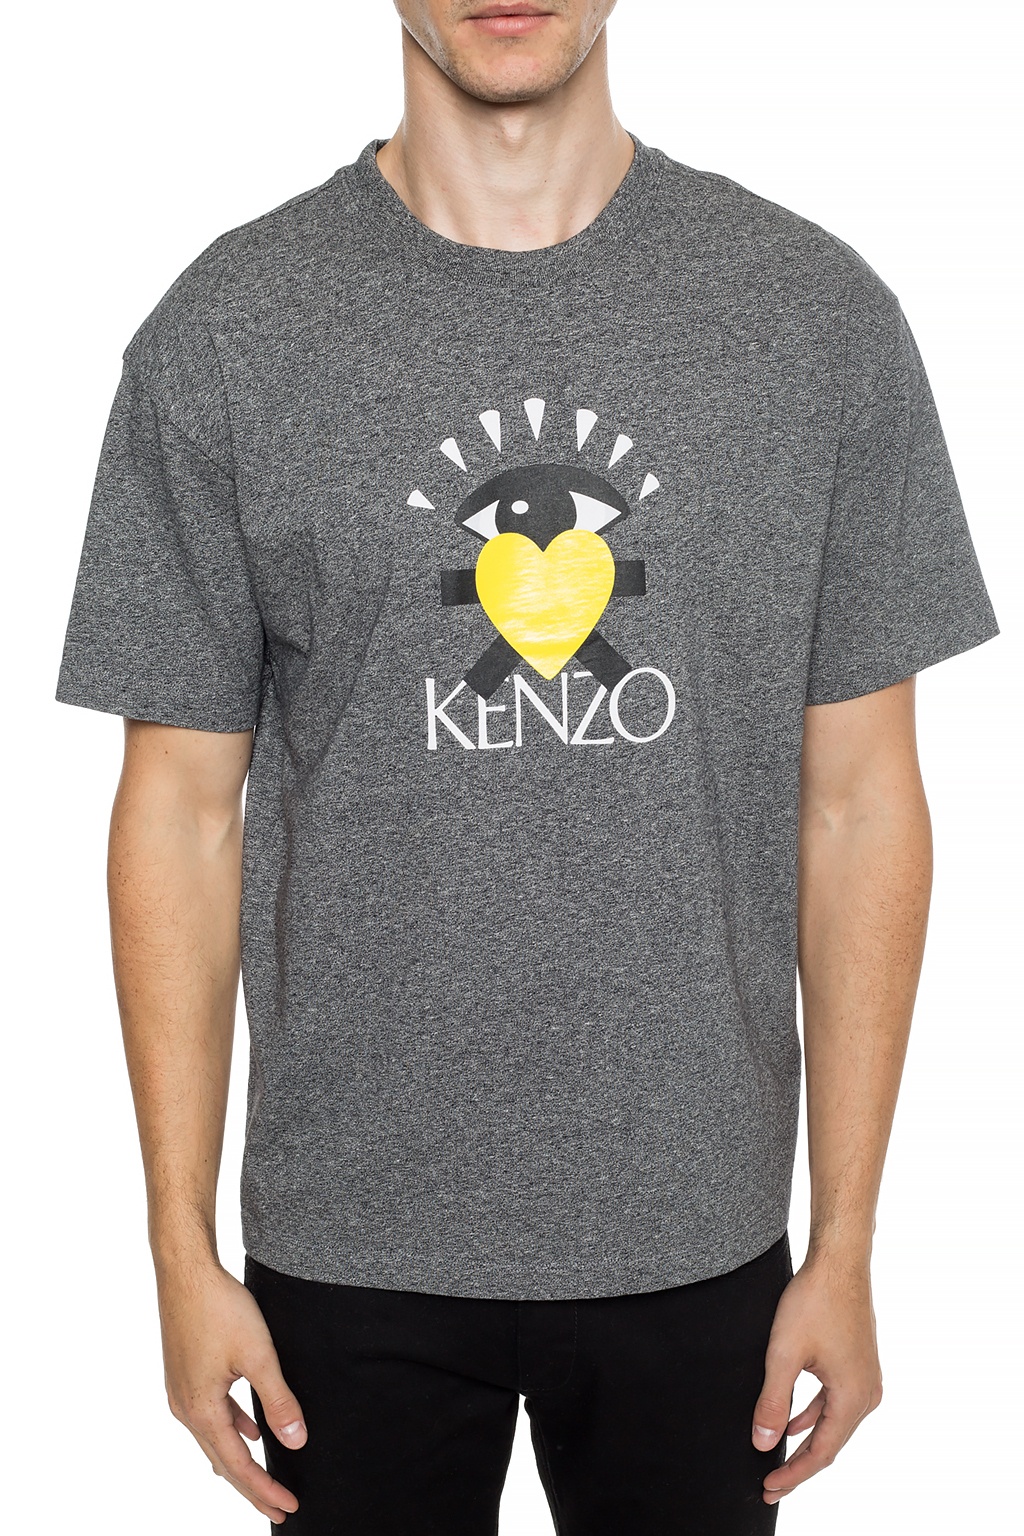 kenzo black and yellow t shirt